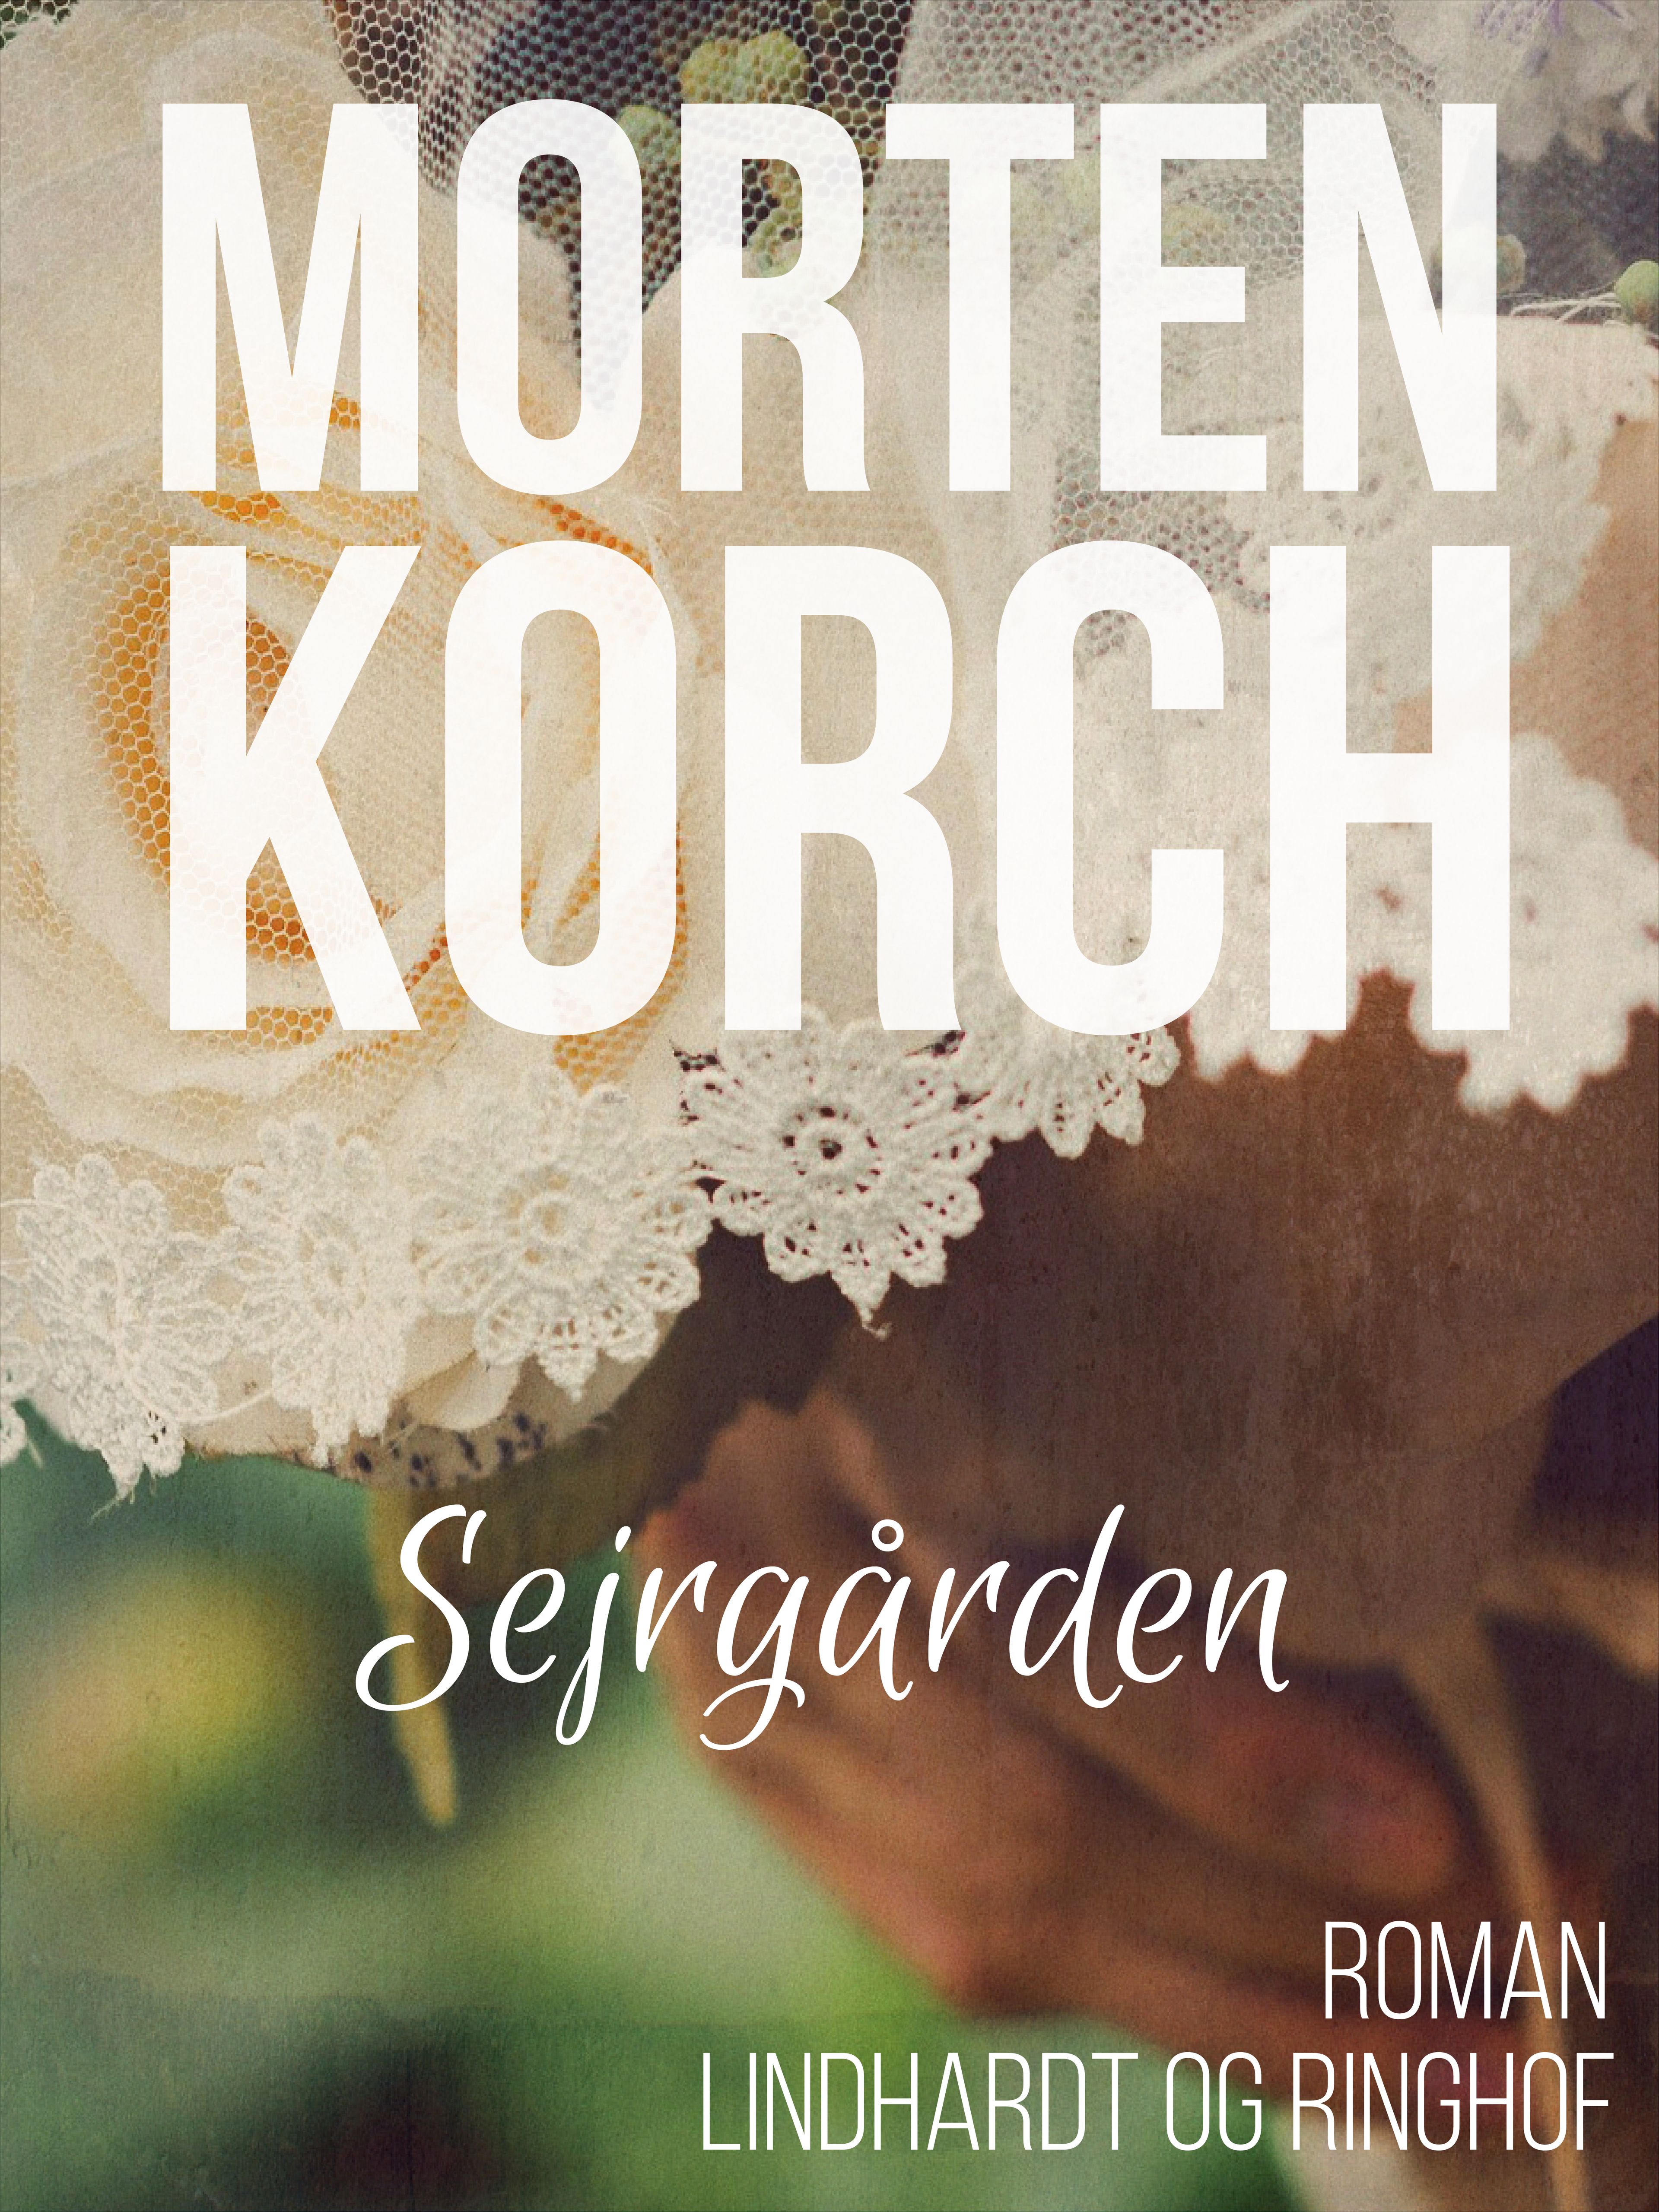 Sejrgården, ljudbok av Morten Korch